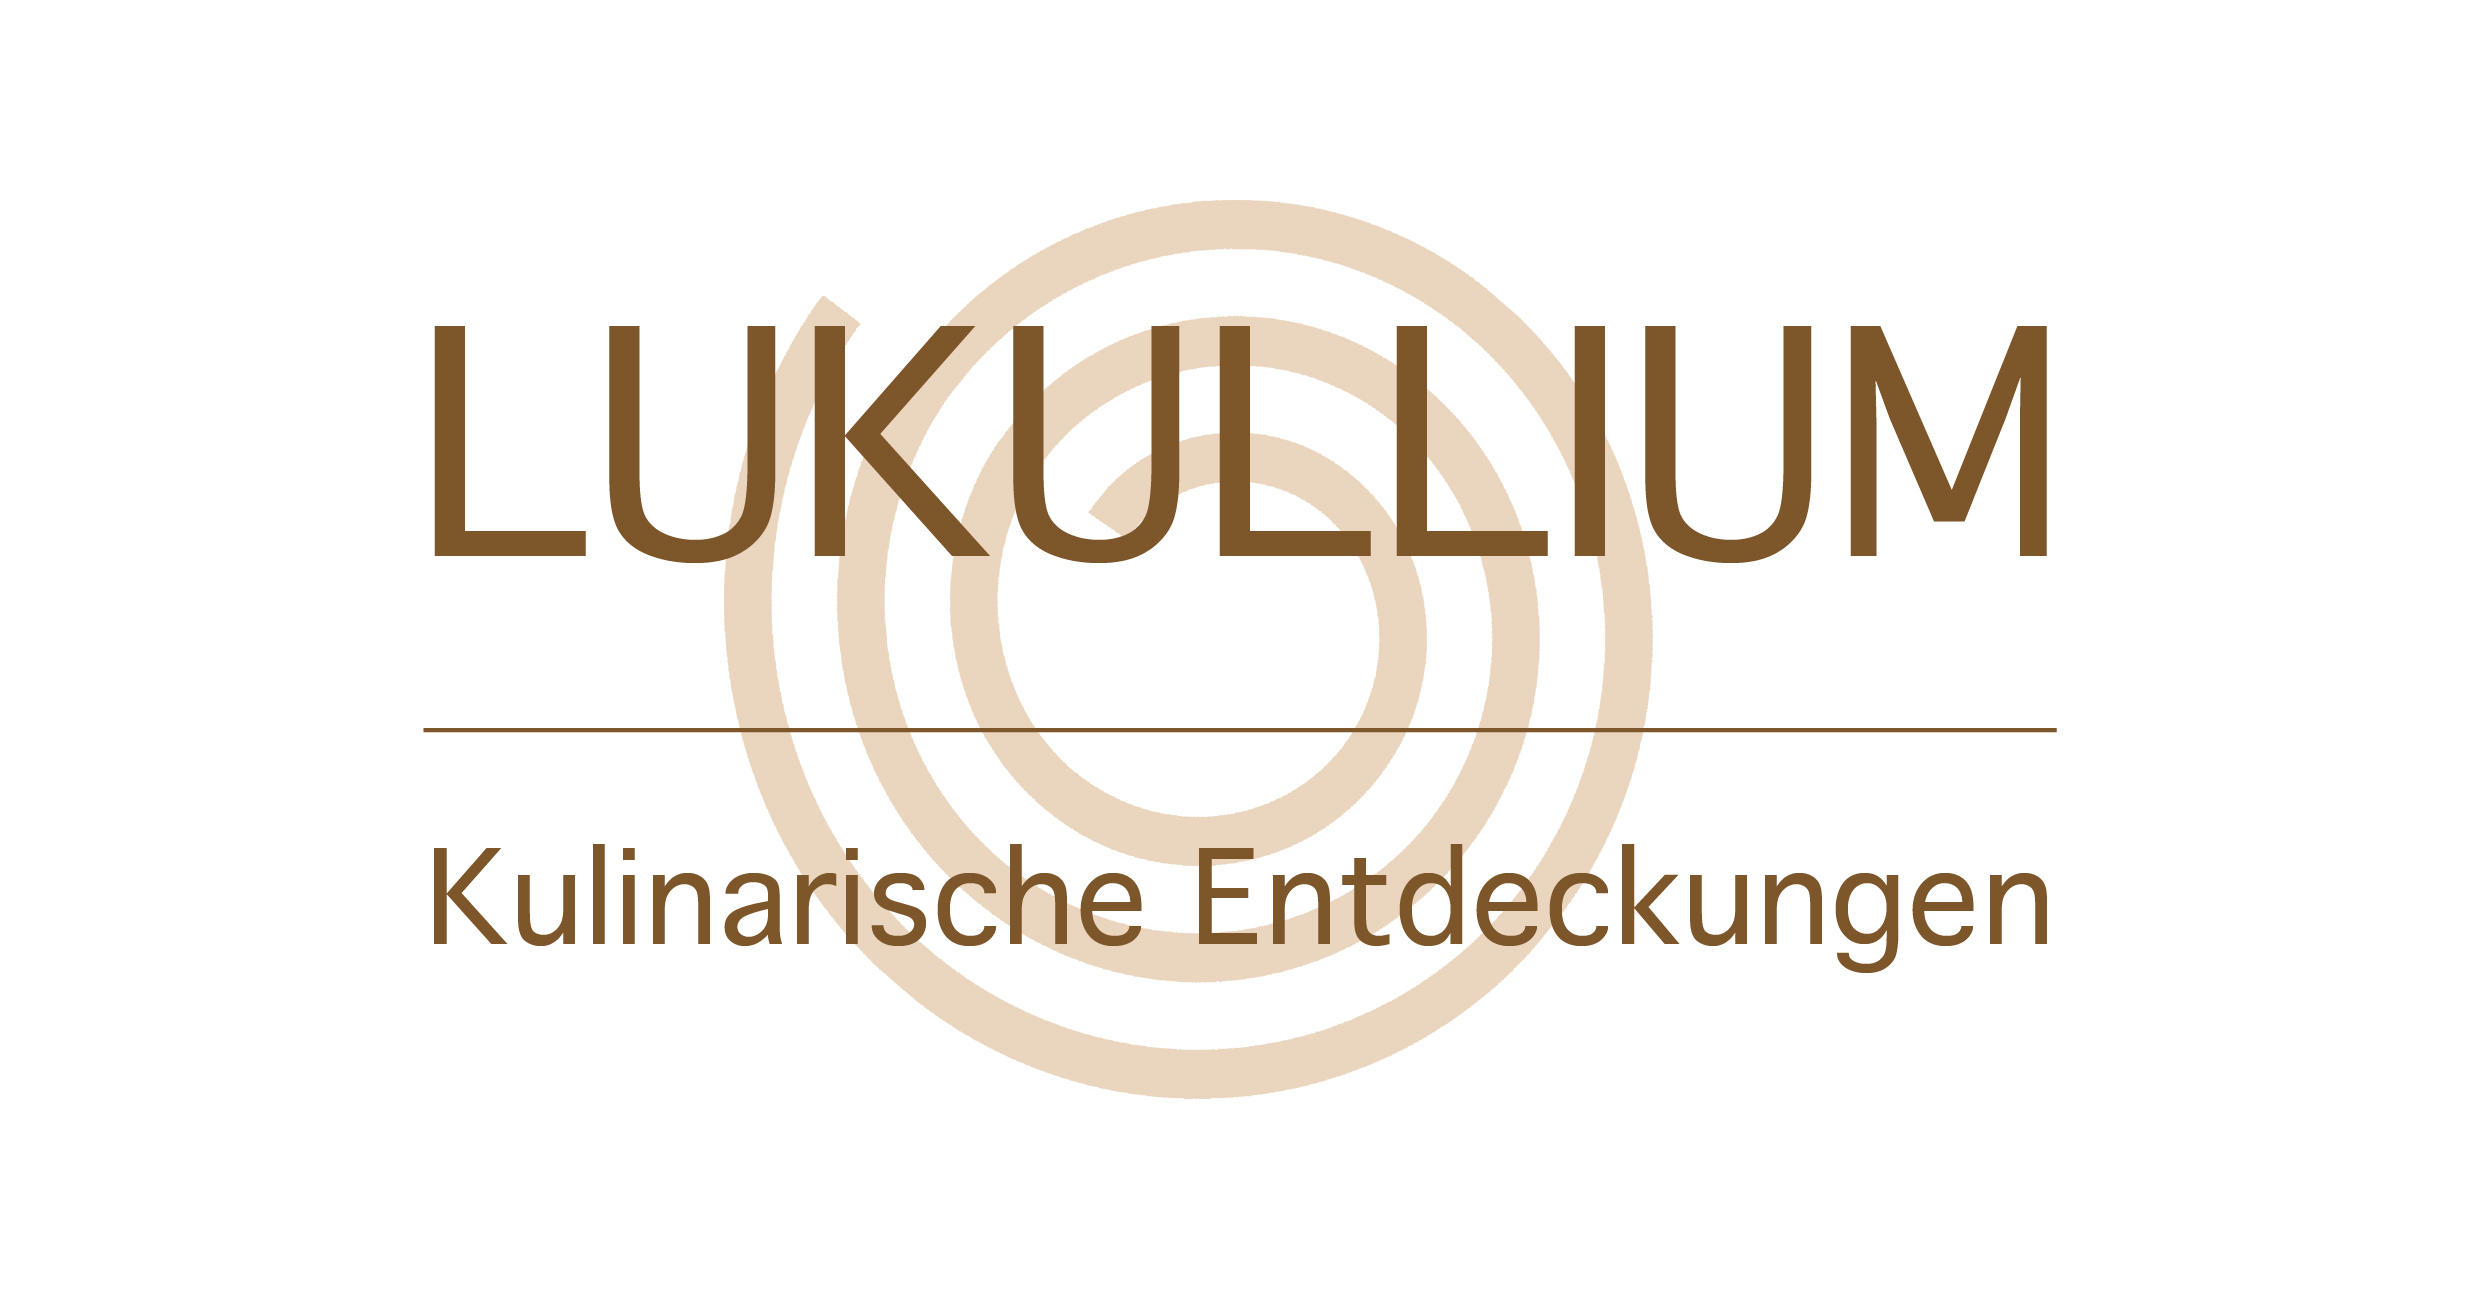 (c) Lukullium.de